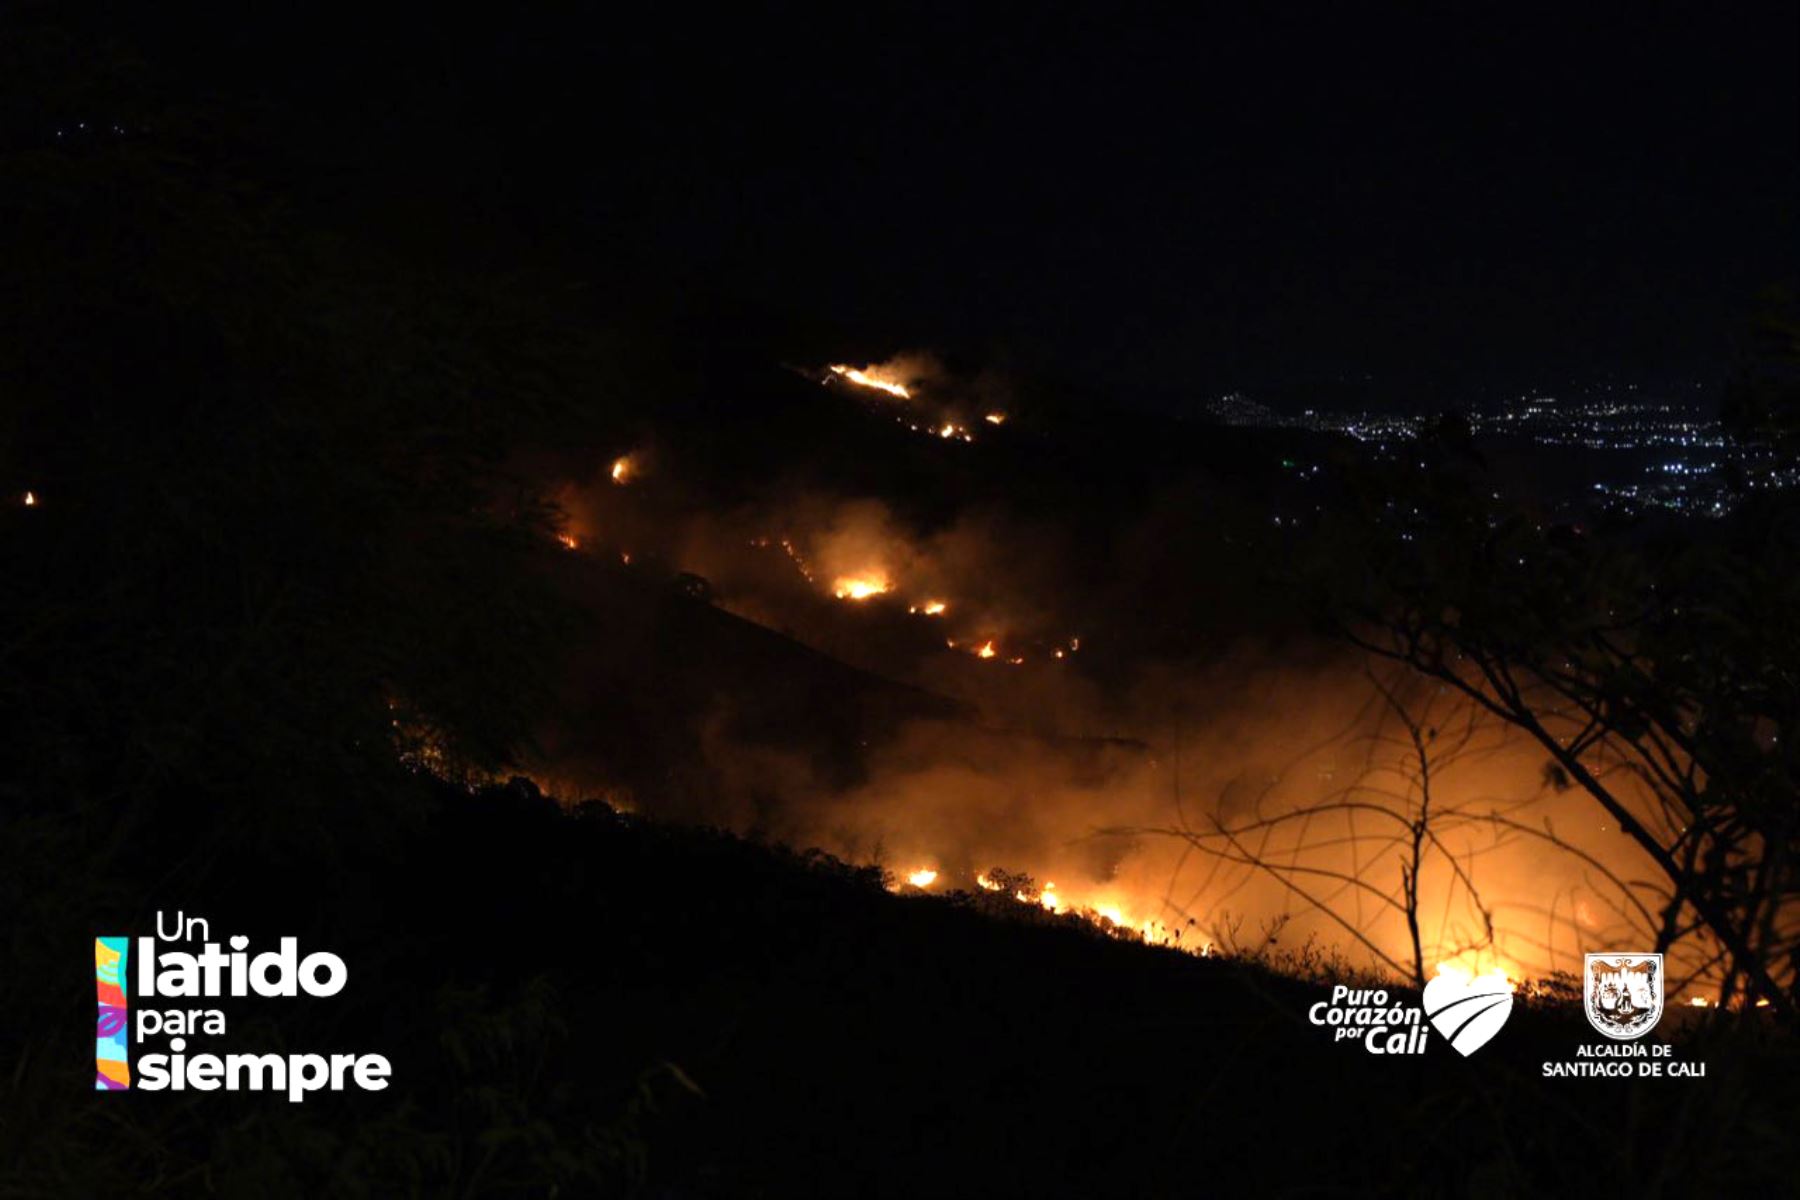 Alrededor de un centenar de unidades de bomberos trabajan arduamente en la extinción del incendio forestal desatado en el sector Colinas, en Altos de Menga, al norte de Cali, Colombia. Pobladores se han sumado a las labores. Foto: ANDINA/Difusión